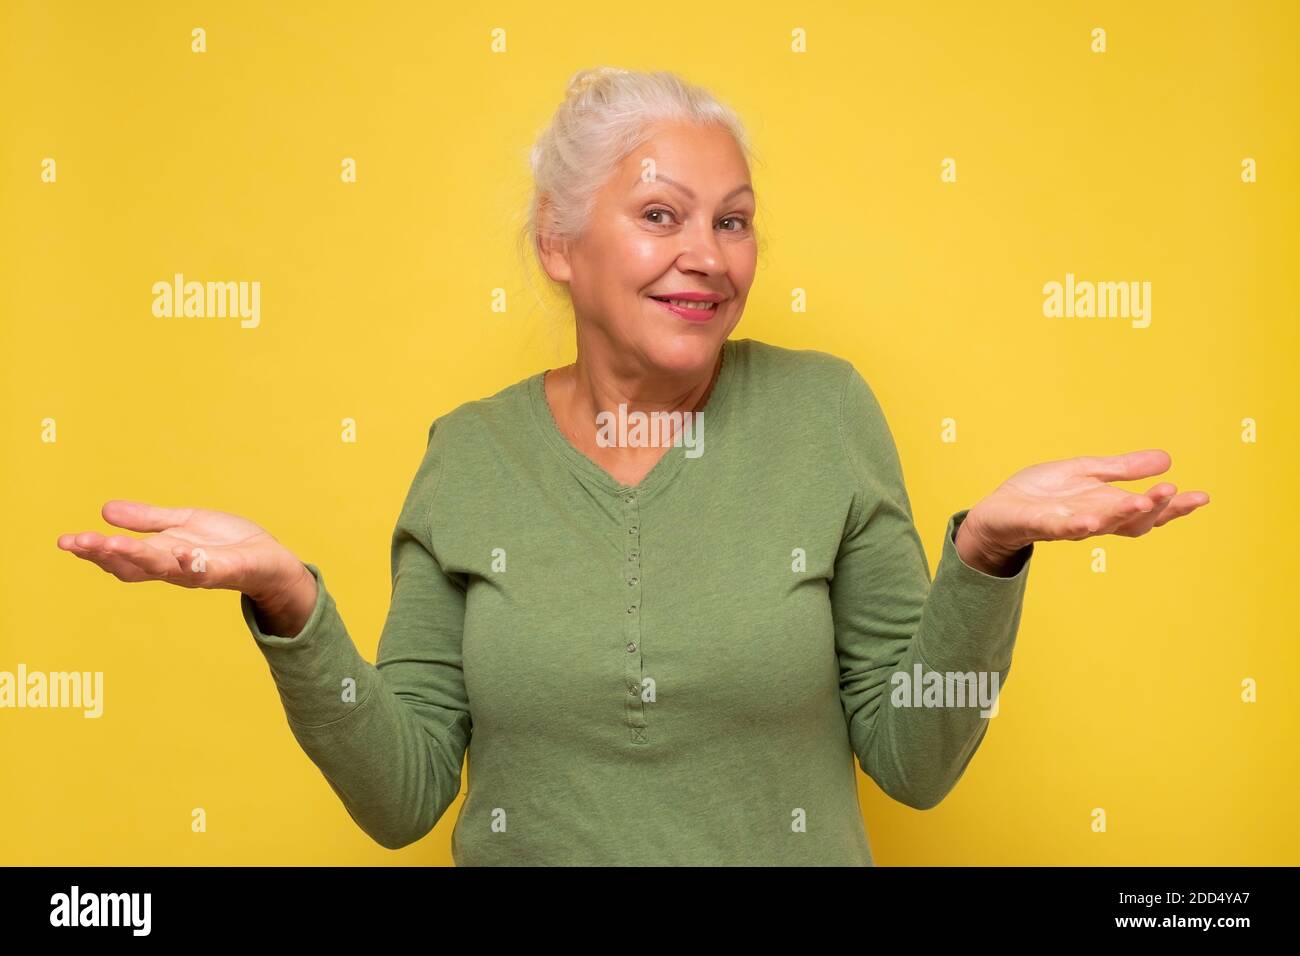 Lächle ältere Frau, die etwas auf offenen Handflächen hält. Studioaufnahme. Stockfoto